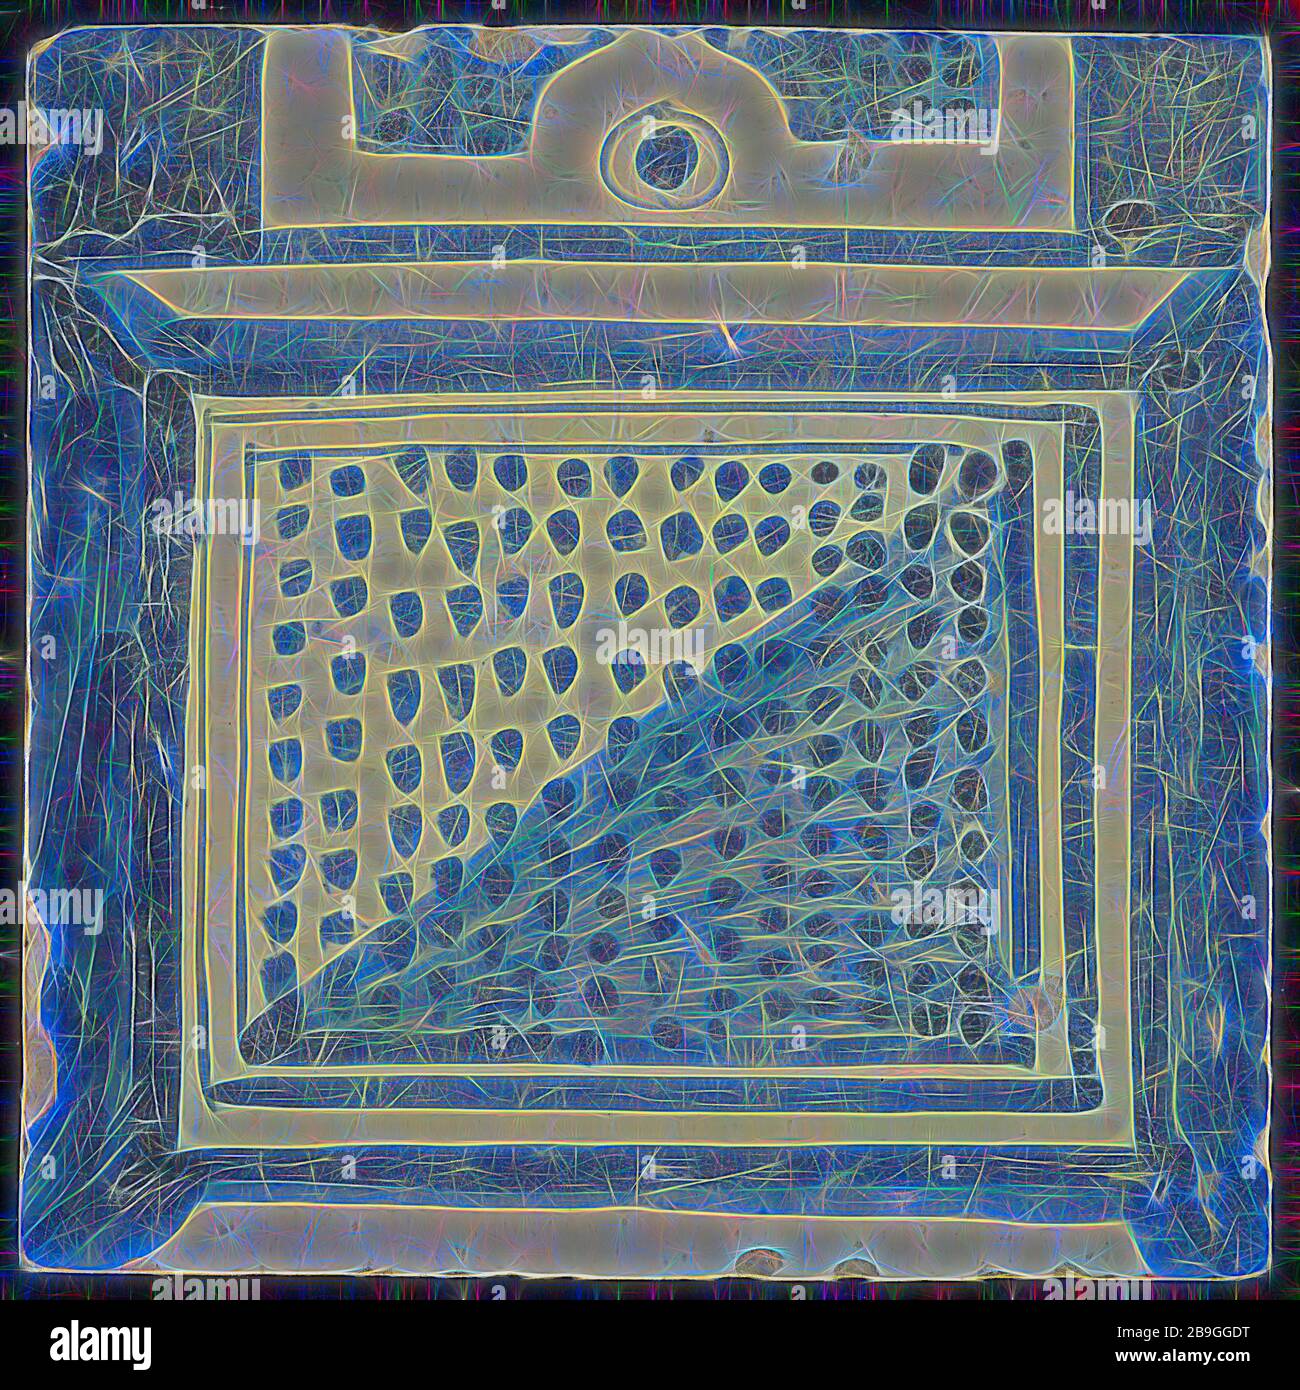 Azulejos de chimenea de la pilastra, azul sobre blanco, parte inferior de la columna con el sótano, compartimento con puntos de la pilastra de la chimenea, baldosas cerámicas de fragmento de metraje de la pilastra, horneados esmalte pintado azulejo vidriado 2x parte de la chimenea de la pilastra originalmente doce o trece shard cuadrado amarillo de alta dos agujeros de clavos. Azul sobre blanco fond. Mosaico forma parte de una sola fila de la pilastra en estilo renacentista y muestra la parte inferior de la columna con el sótano con parte de la división con puntos de sombra en la parte derecha del reverso Q 1914 construcción ayuntamiento Zandstraat cuartas partes segunda guerra mundial el bombardeo de la ciudad de Rotterdam cente Foto de stock